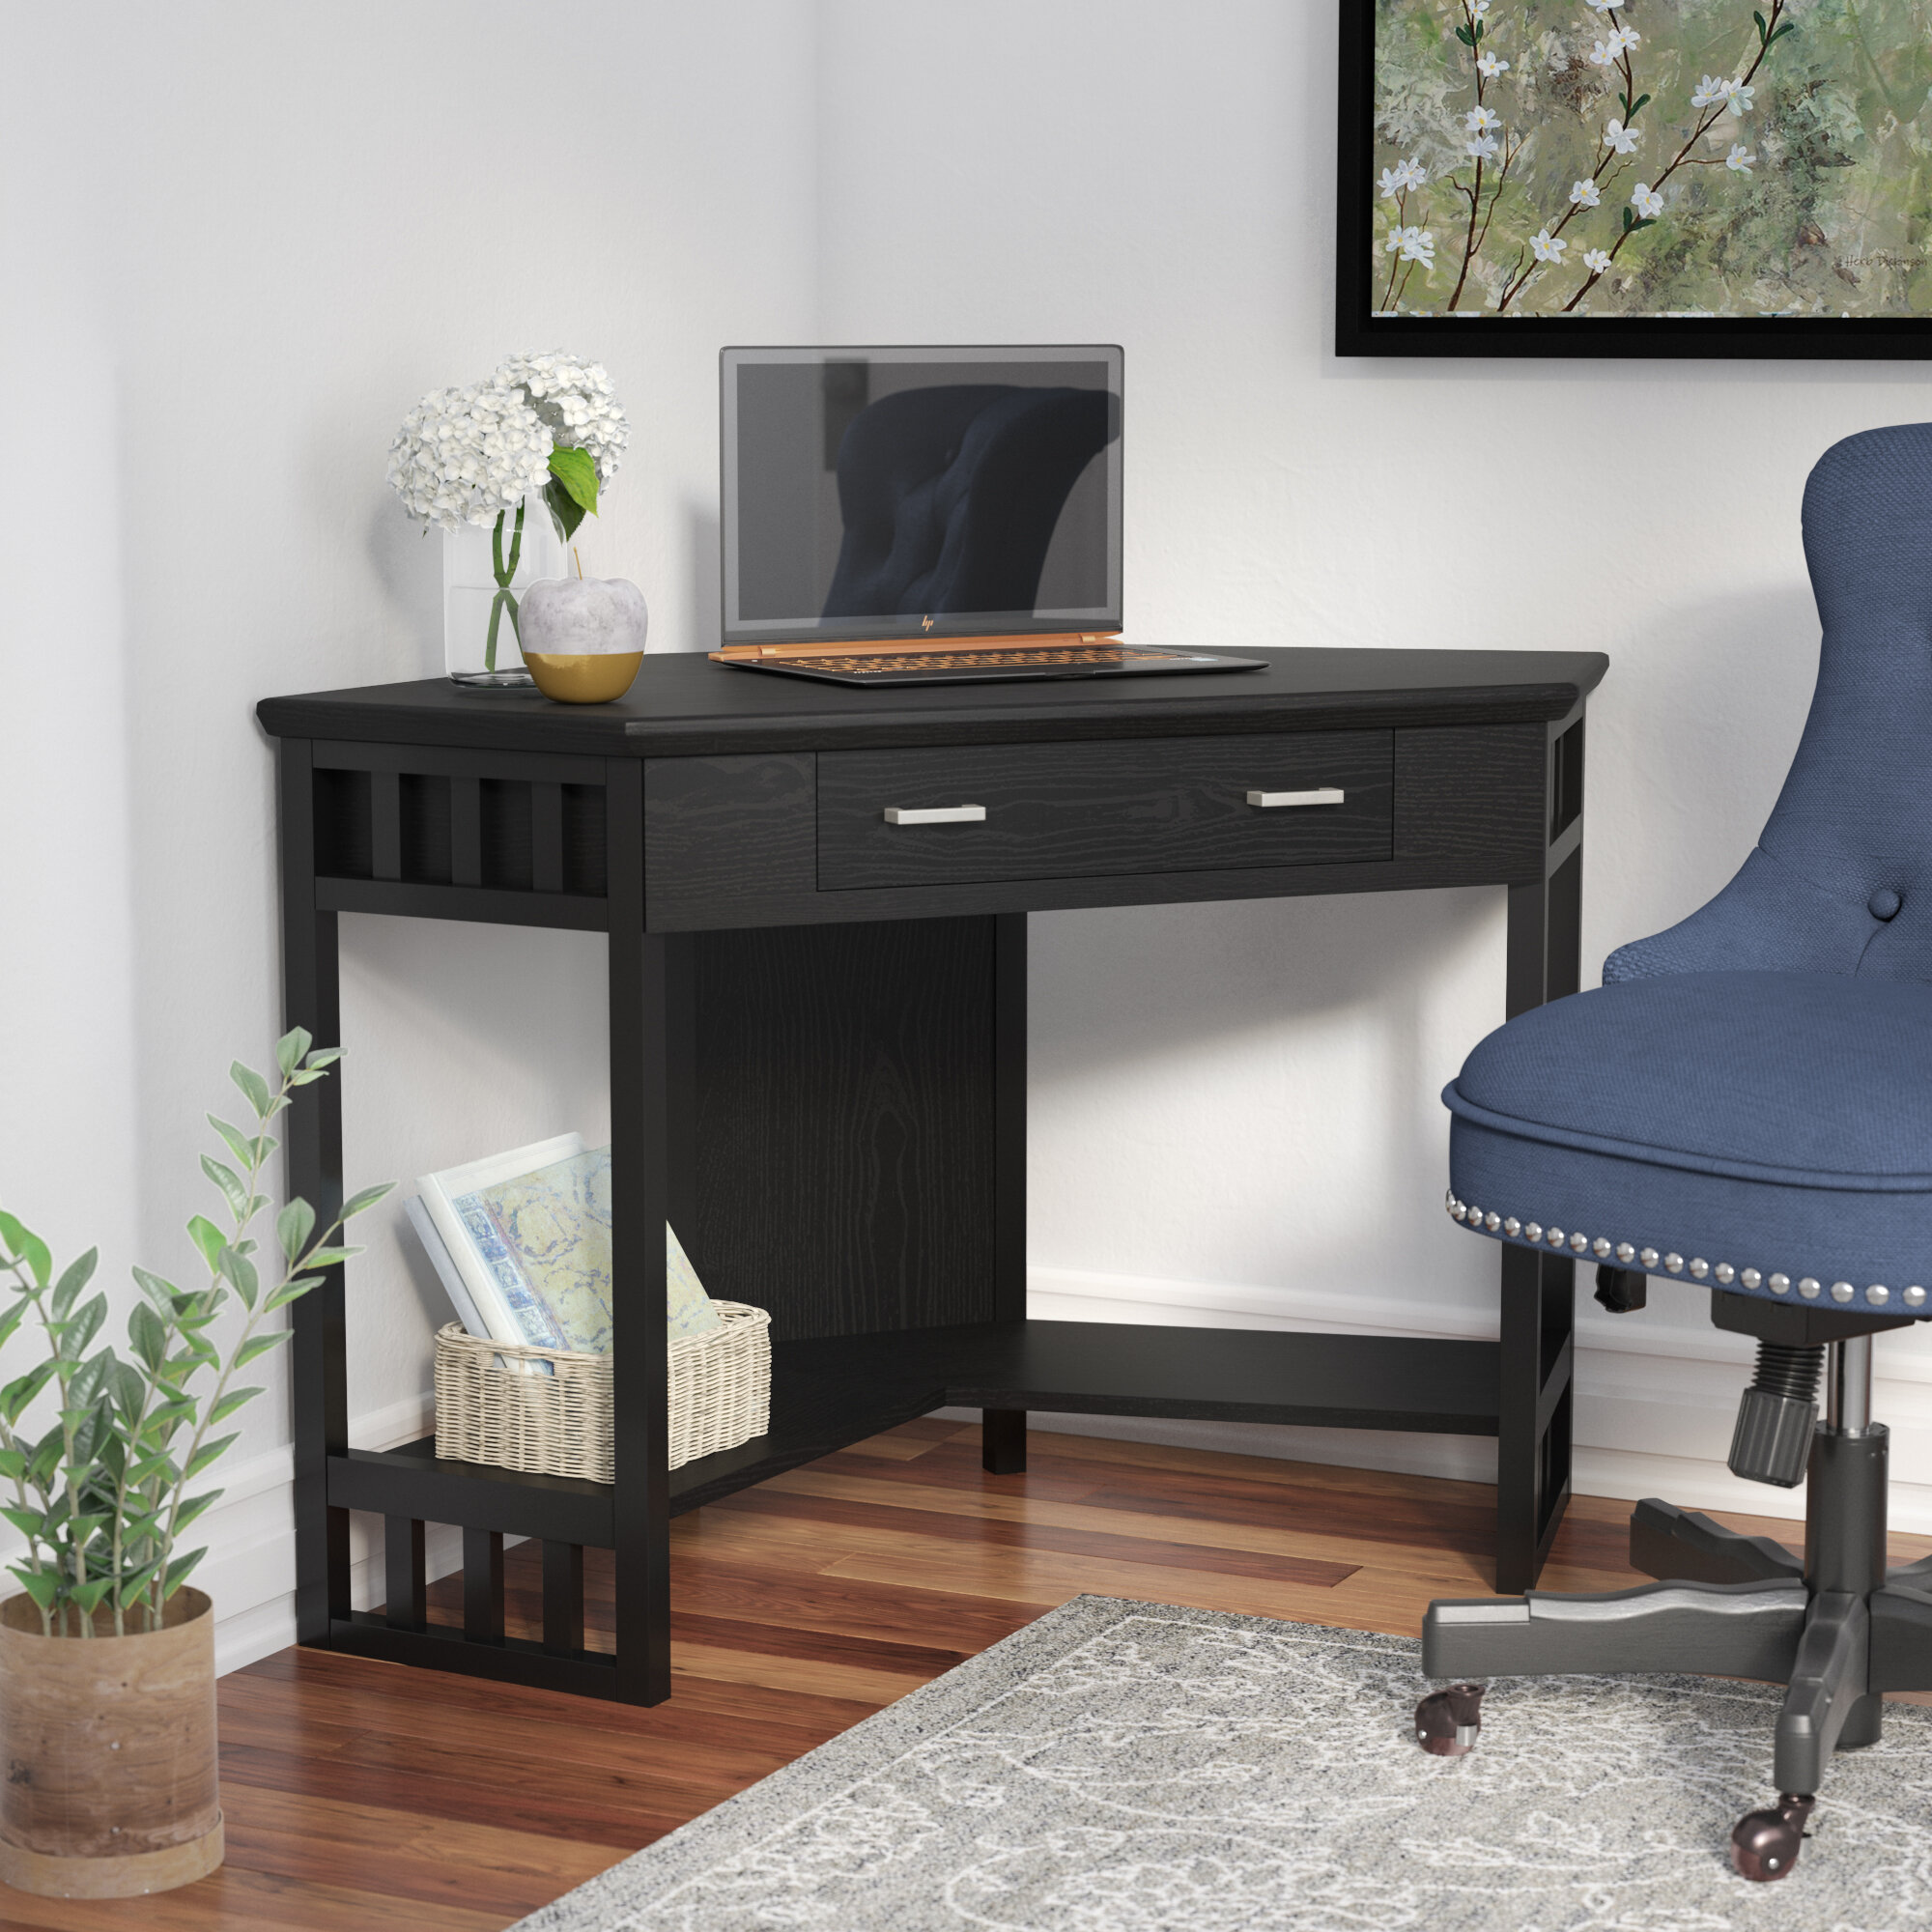 Andover Mills Noam Solid Wood Corner Desk Reviews Wayfair